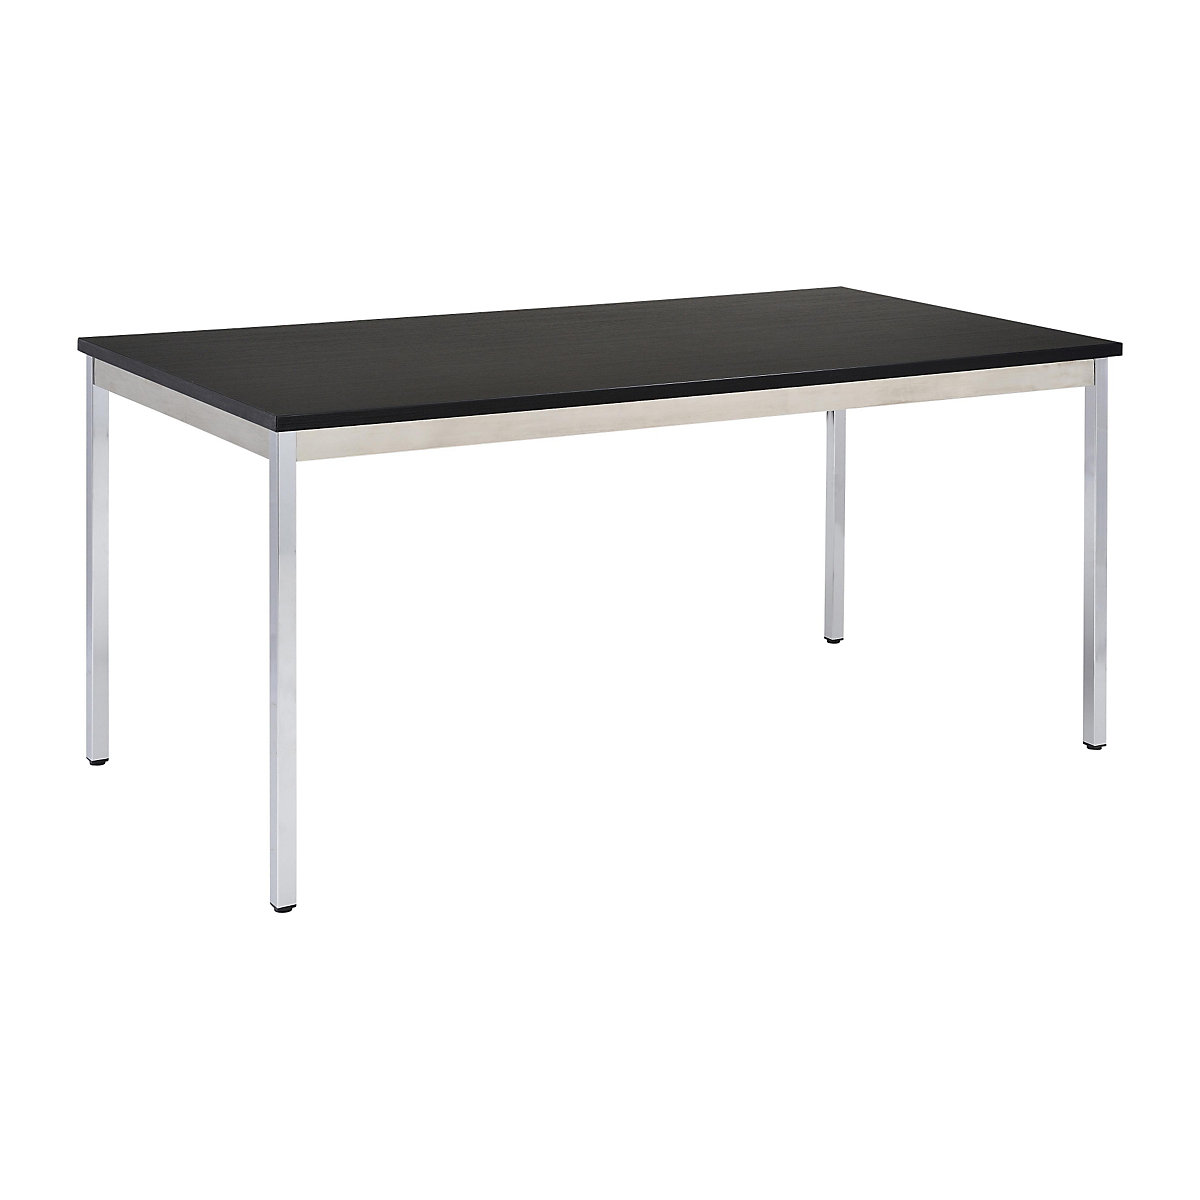 Víceúčelový stůl – eurokraft basic, obdélníkový tvar, š x v 1200 x 740 mm, hloubka 600 mm, deska černá, podstavec pochromovaný-20